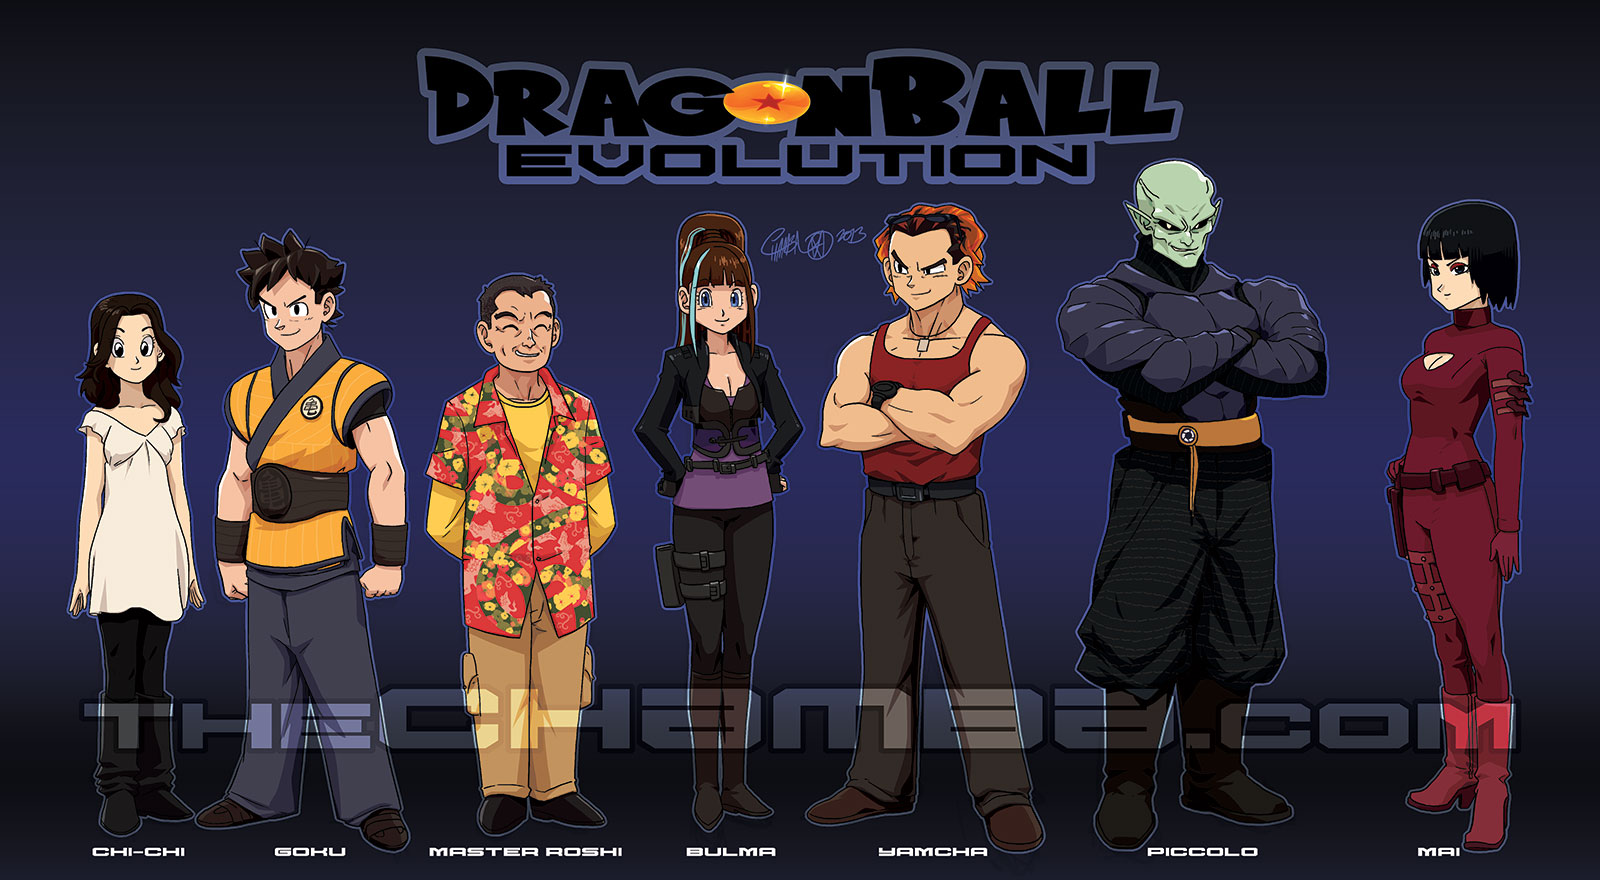 dragonball-evolution-dragonball-the-movie-wallpaper-8437008-fanpop